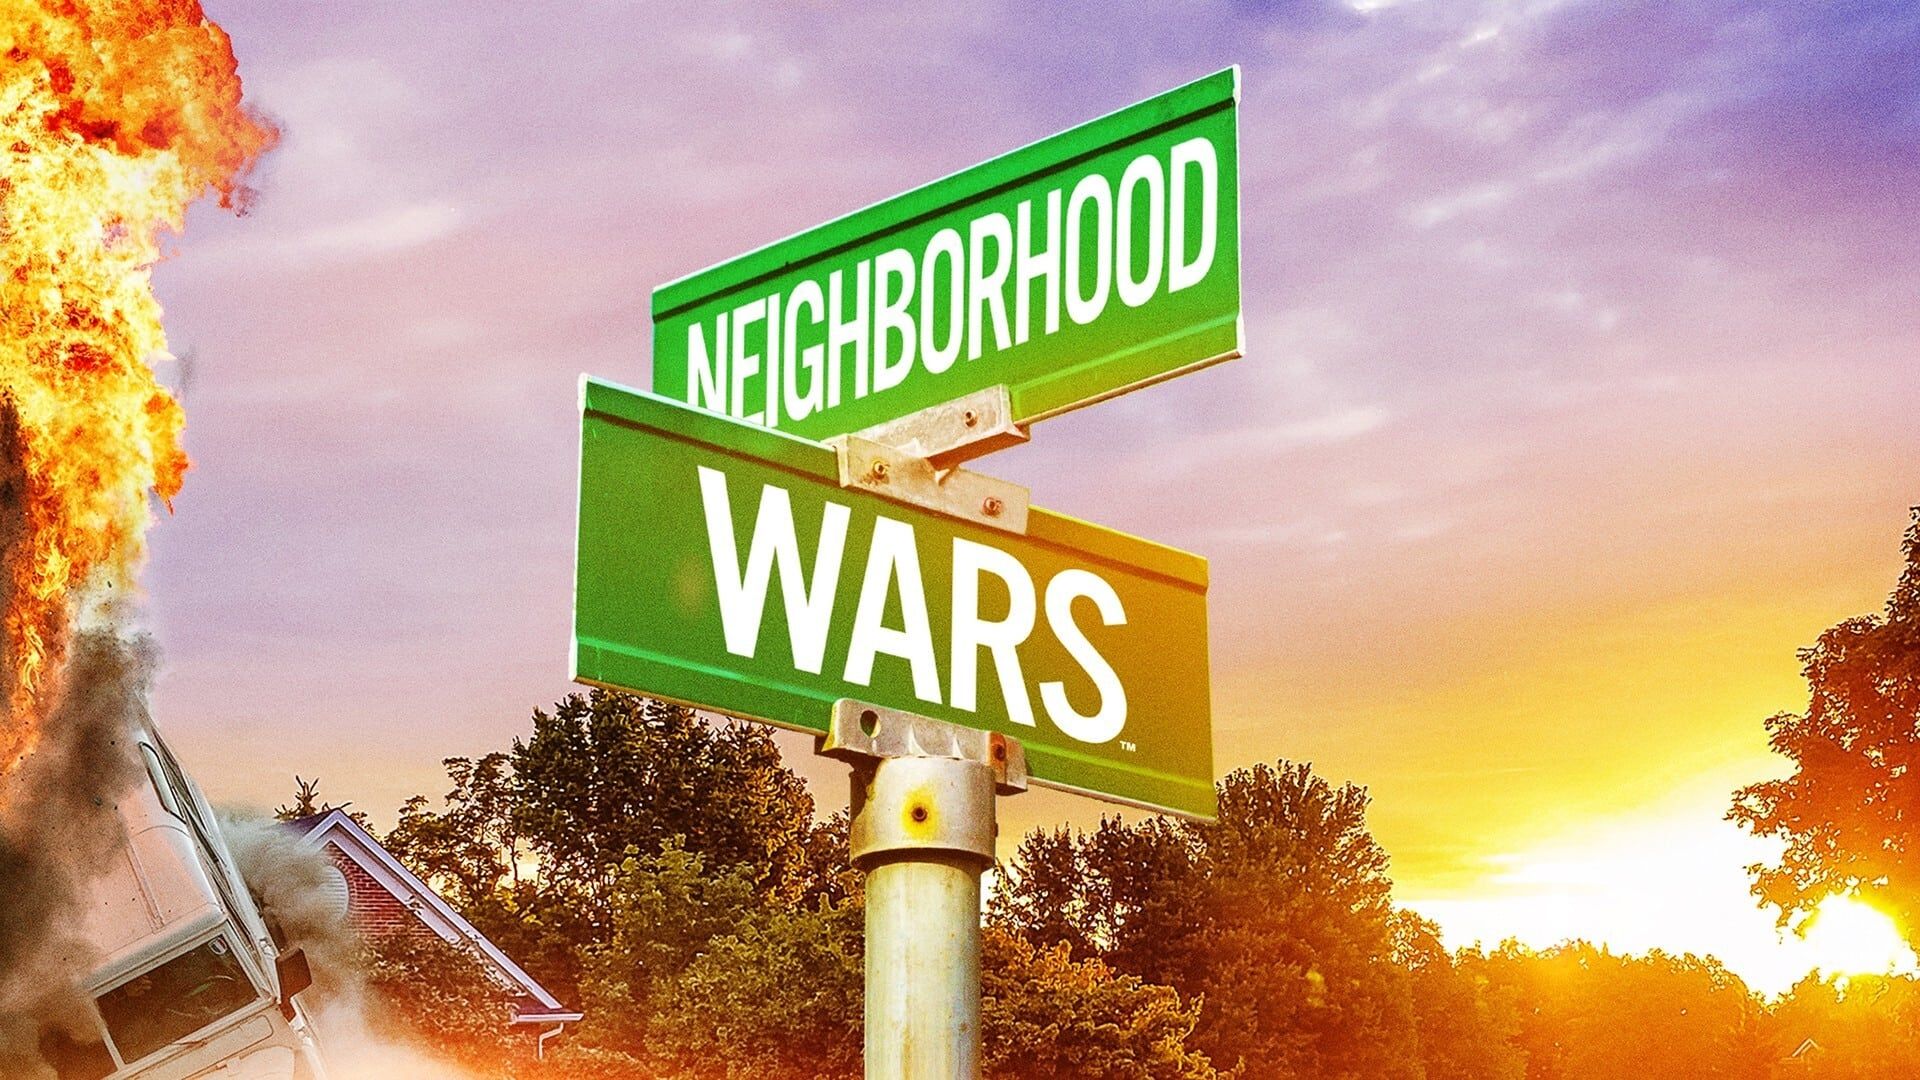 Neighborhood Wars background